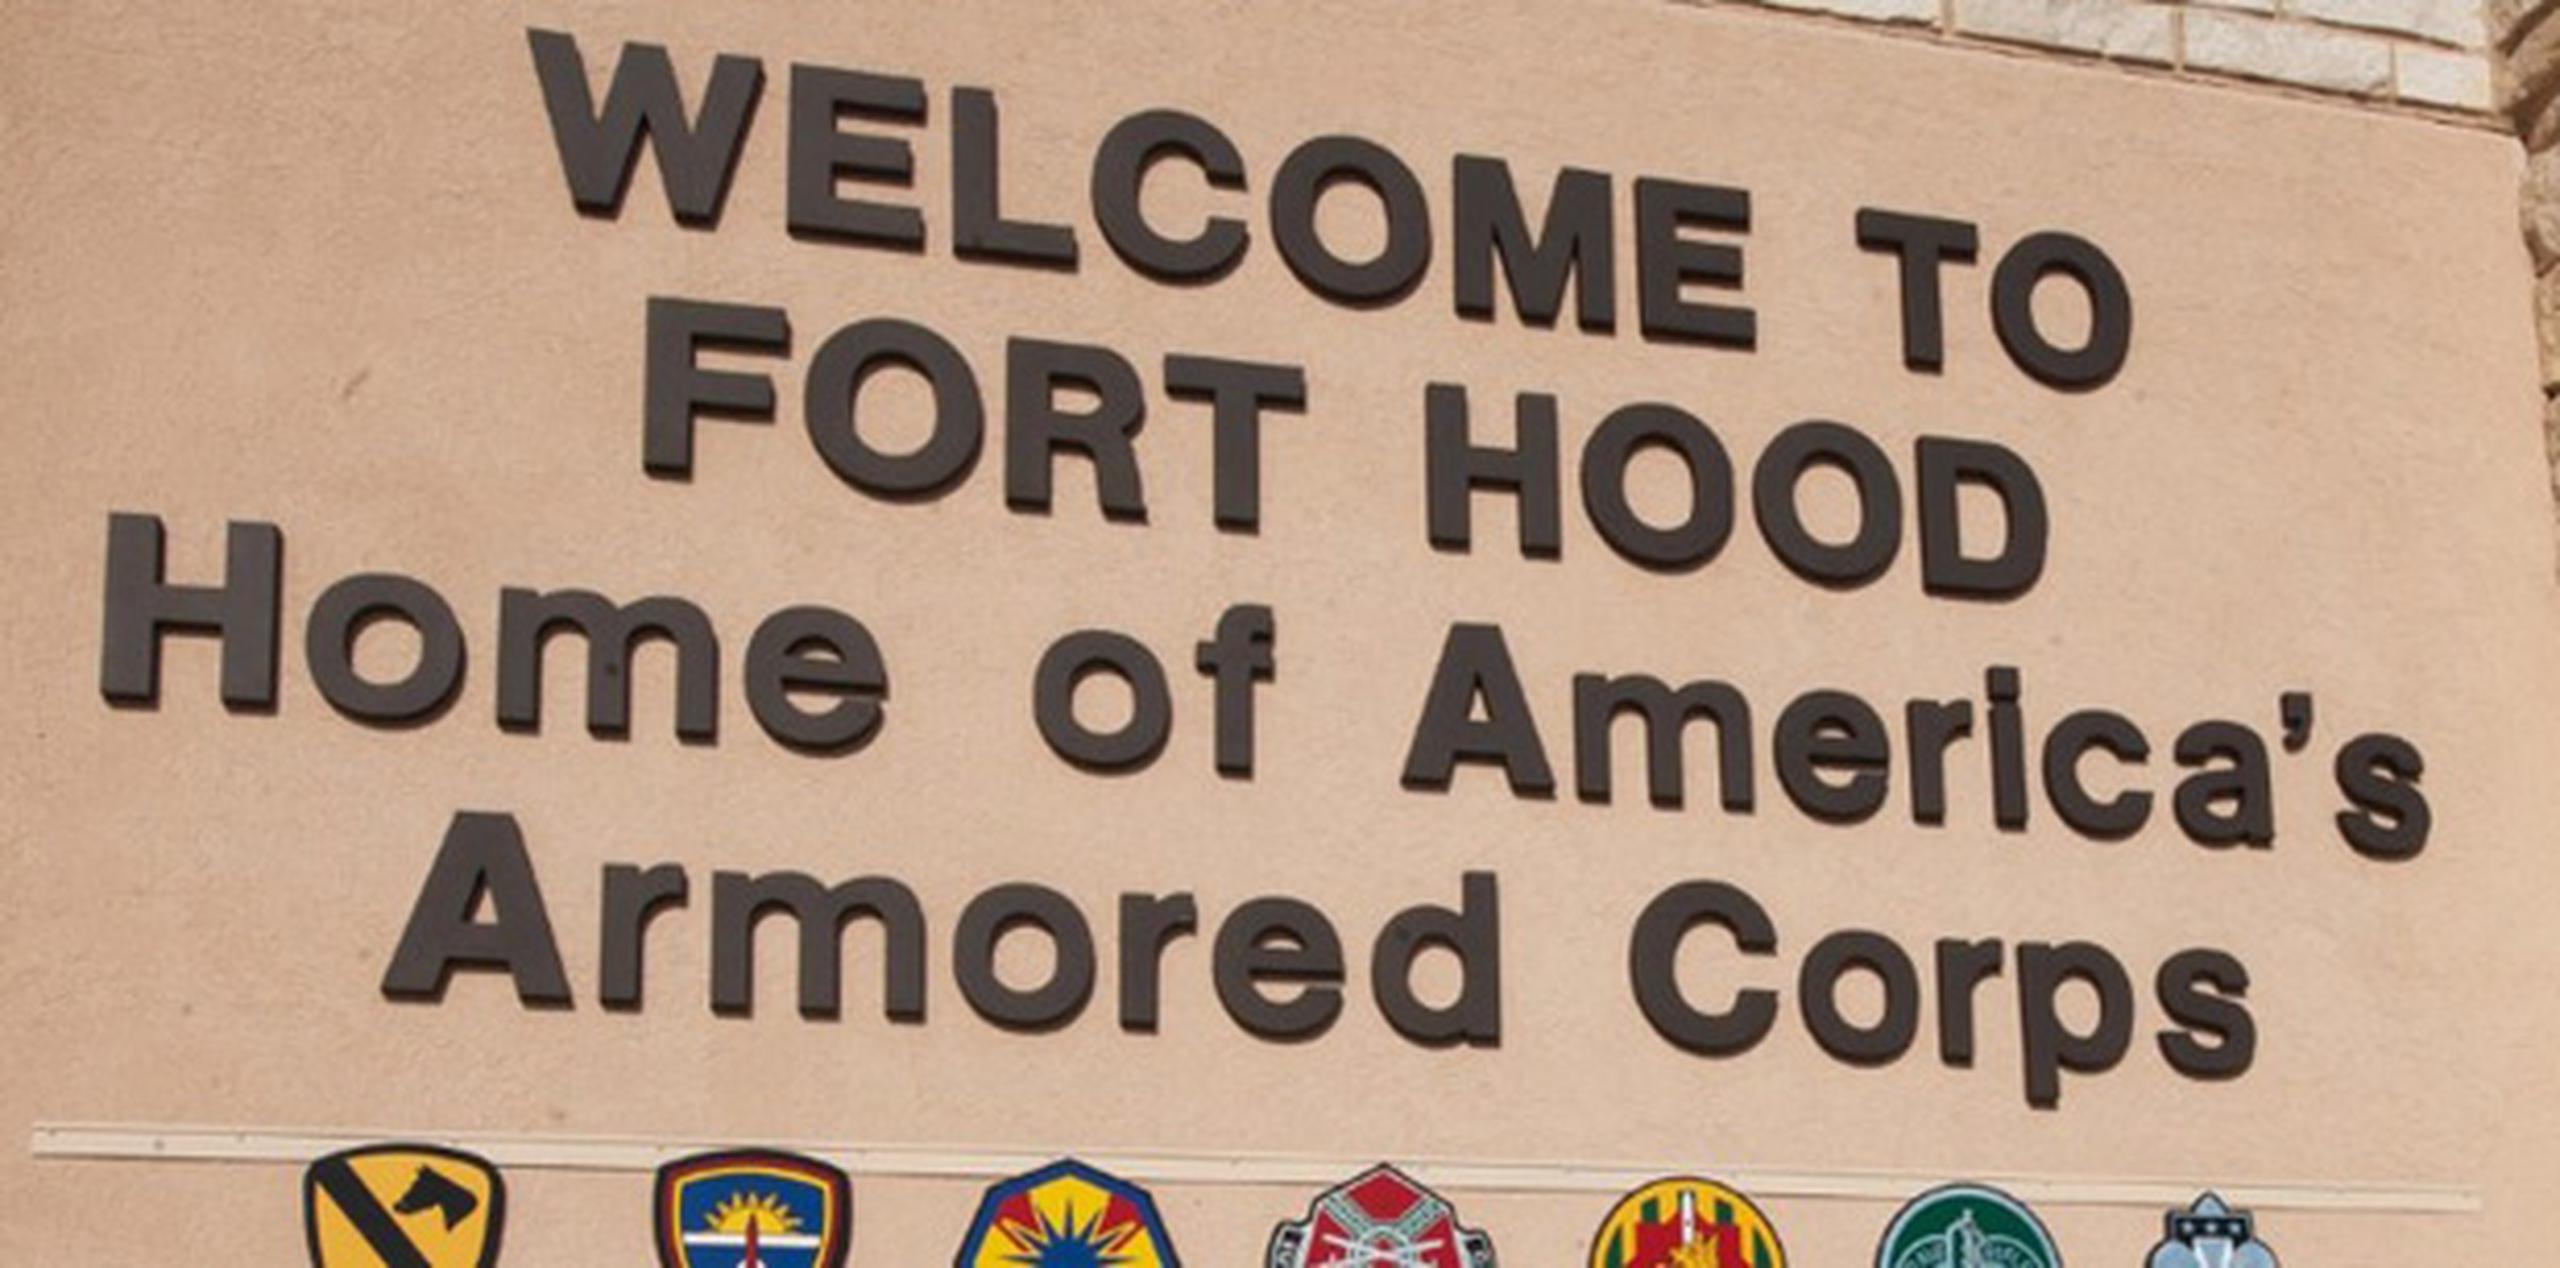 El 5 de noviembre de 2009 un militar mató a 13 personas e hirió a 30 en Fort Hood, Texas. (AFP)